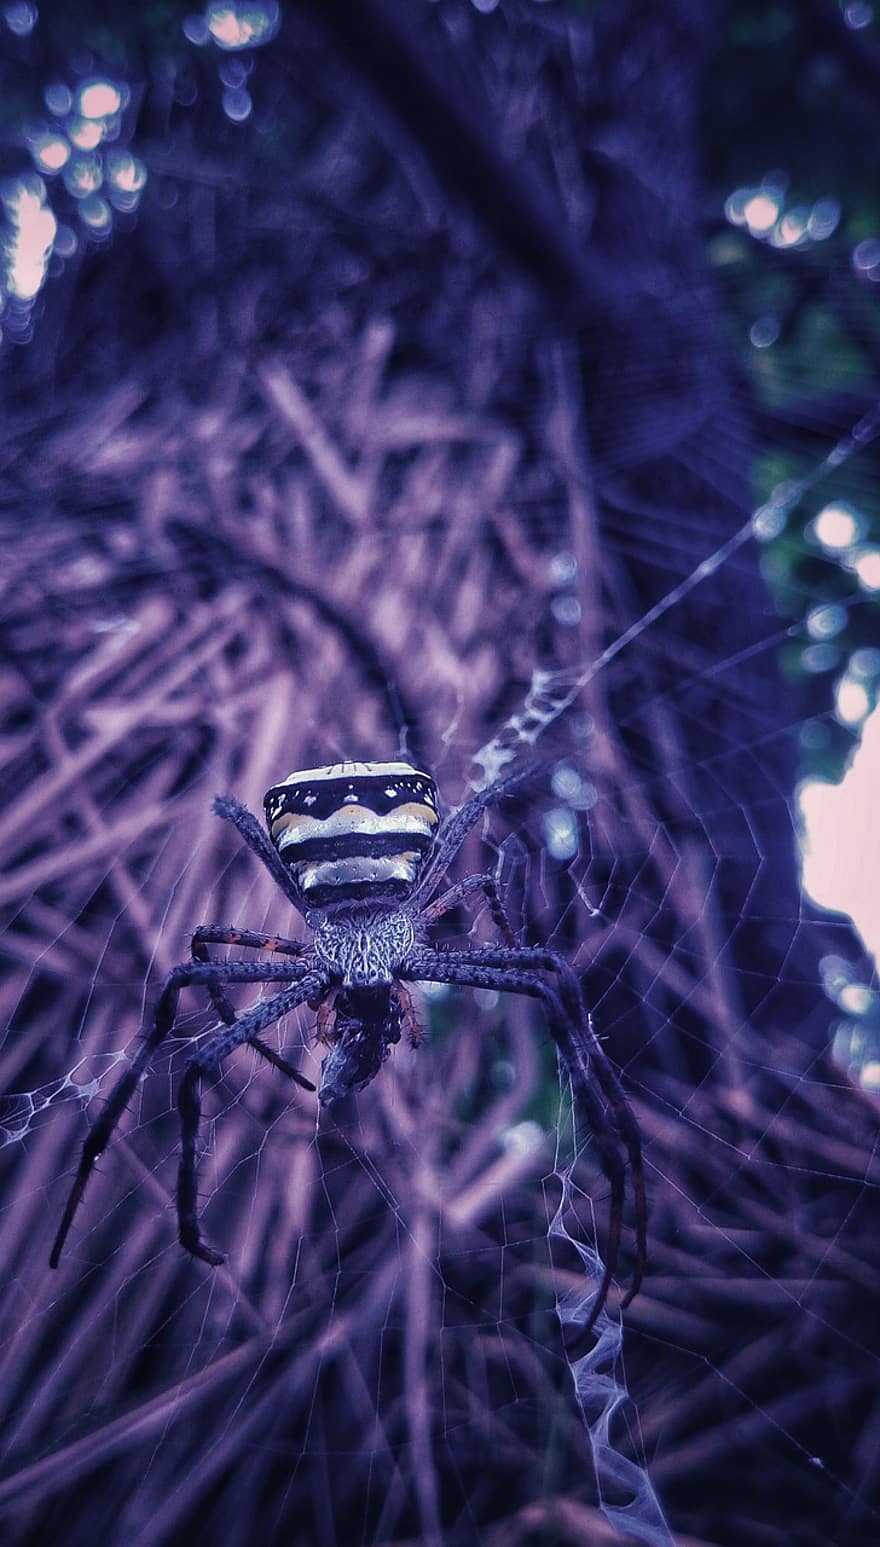 pavouk, pavoukovec, pavoučí síť, pavučina, web, koule, tkadlec, hmyz, arachnofobie, Příroda, volně žijících živočichů